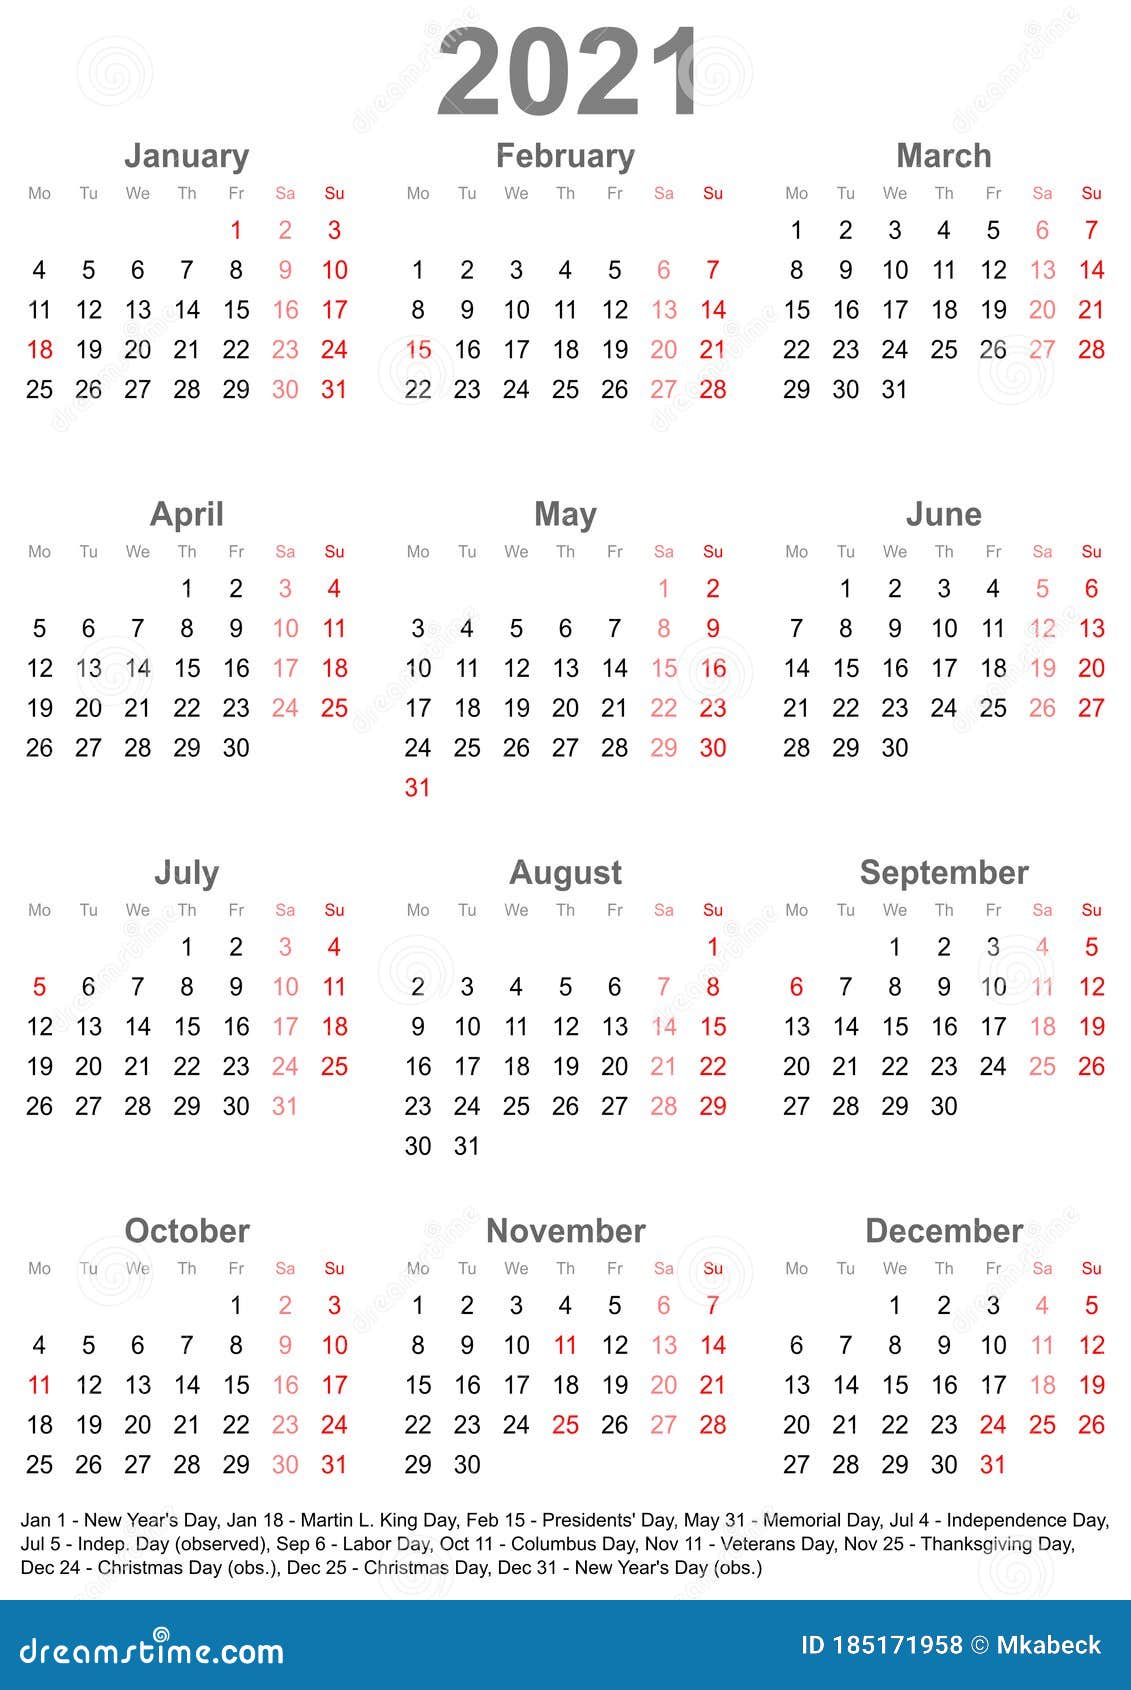 2021 public holidays Public Holidays